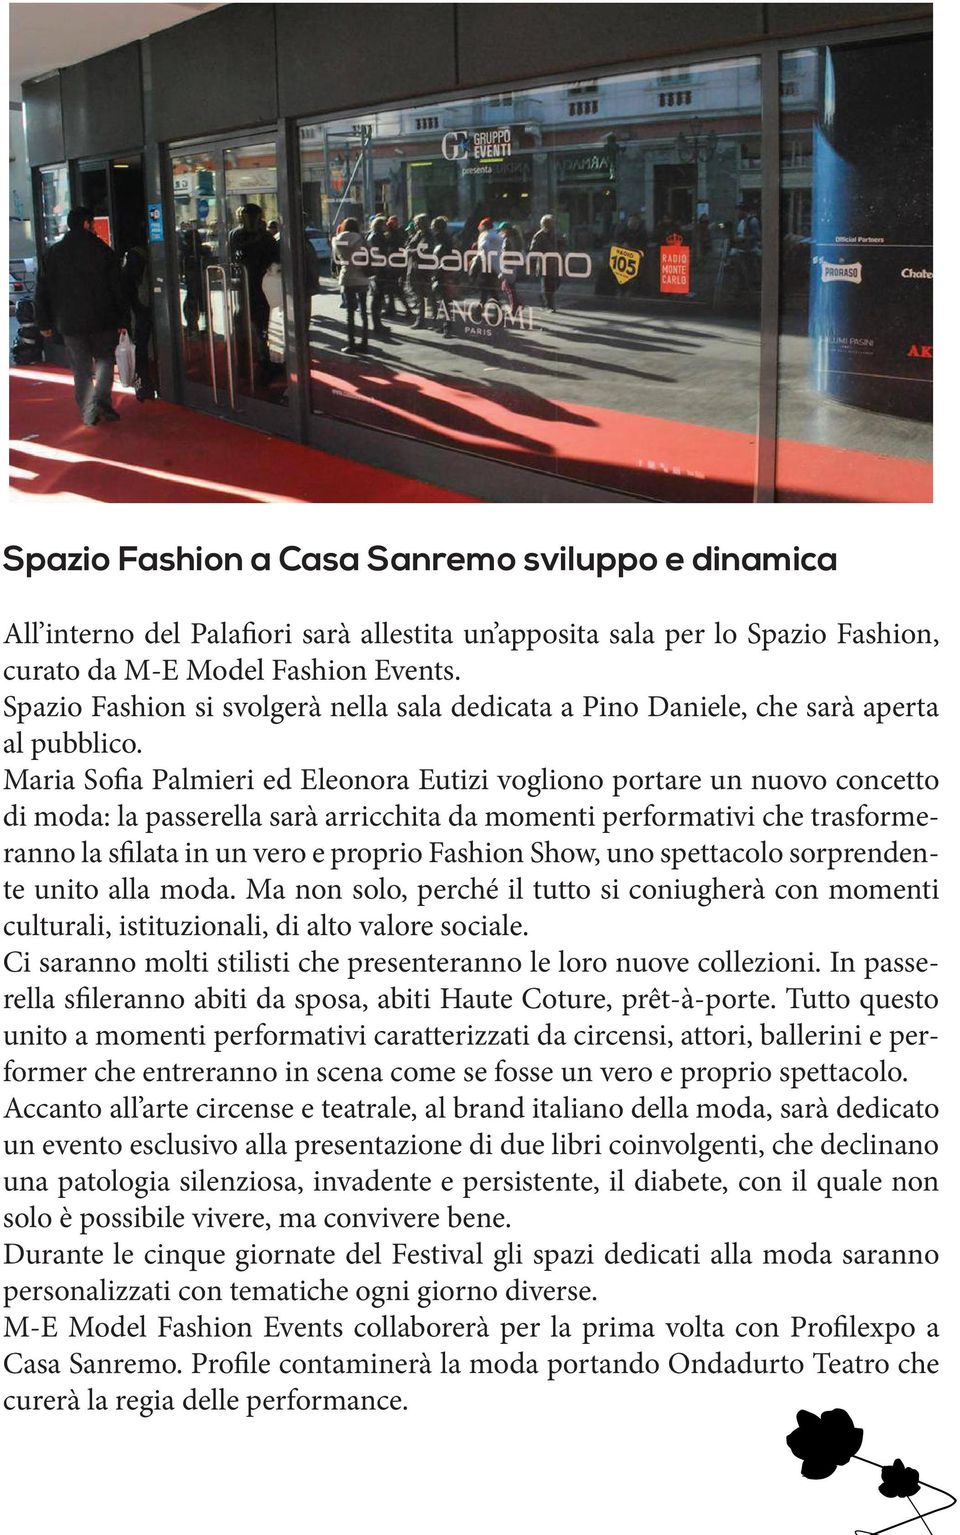 Maria Sofia Palmieri ed Eleonora Eutizi vogliono portare un nuovo concetto di moda: la passerella sarà arricchita da momenti performativi che trasformeranno la sfilata in un vero e proprio Fashion